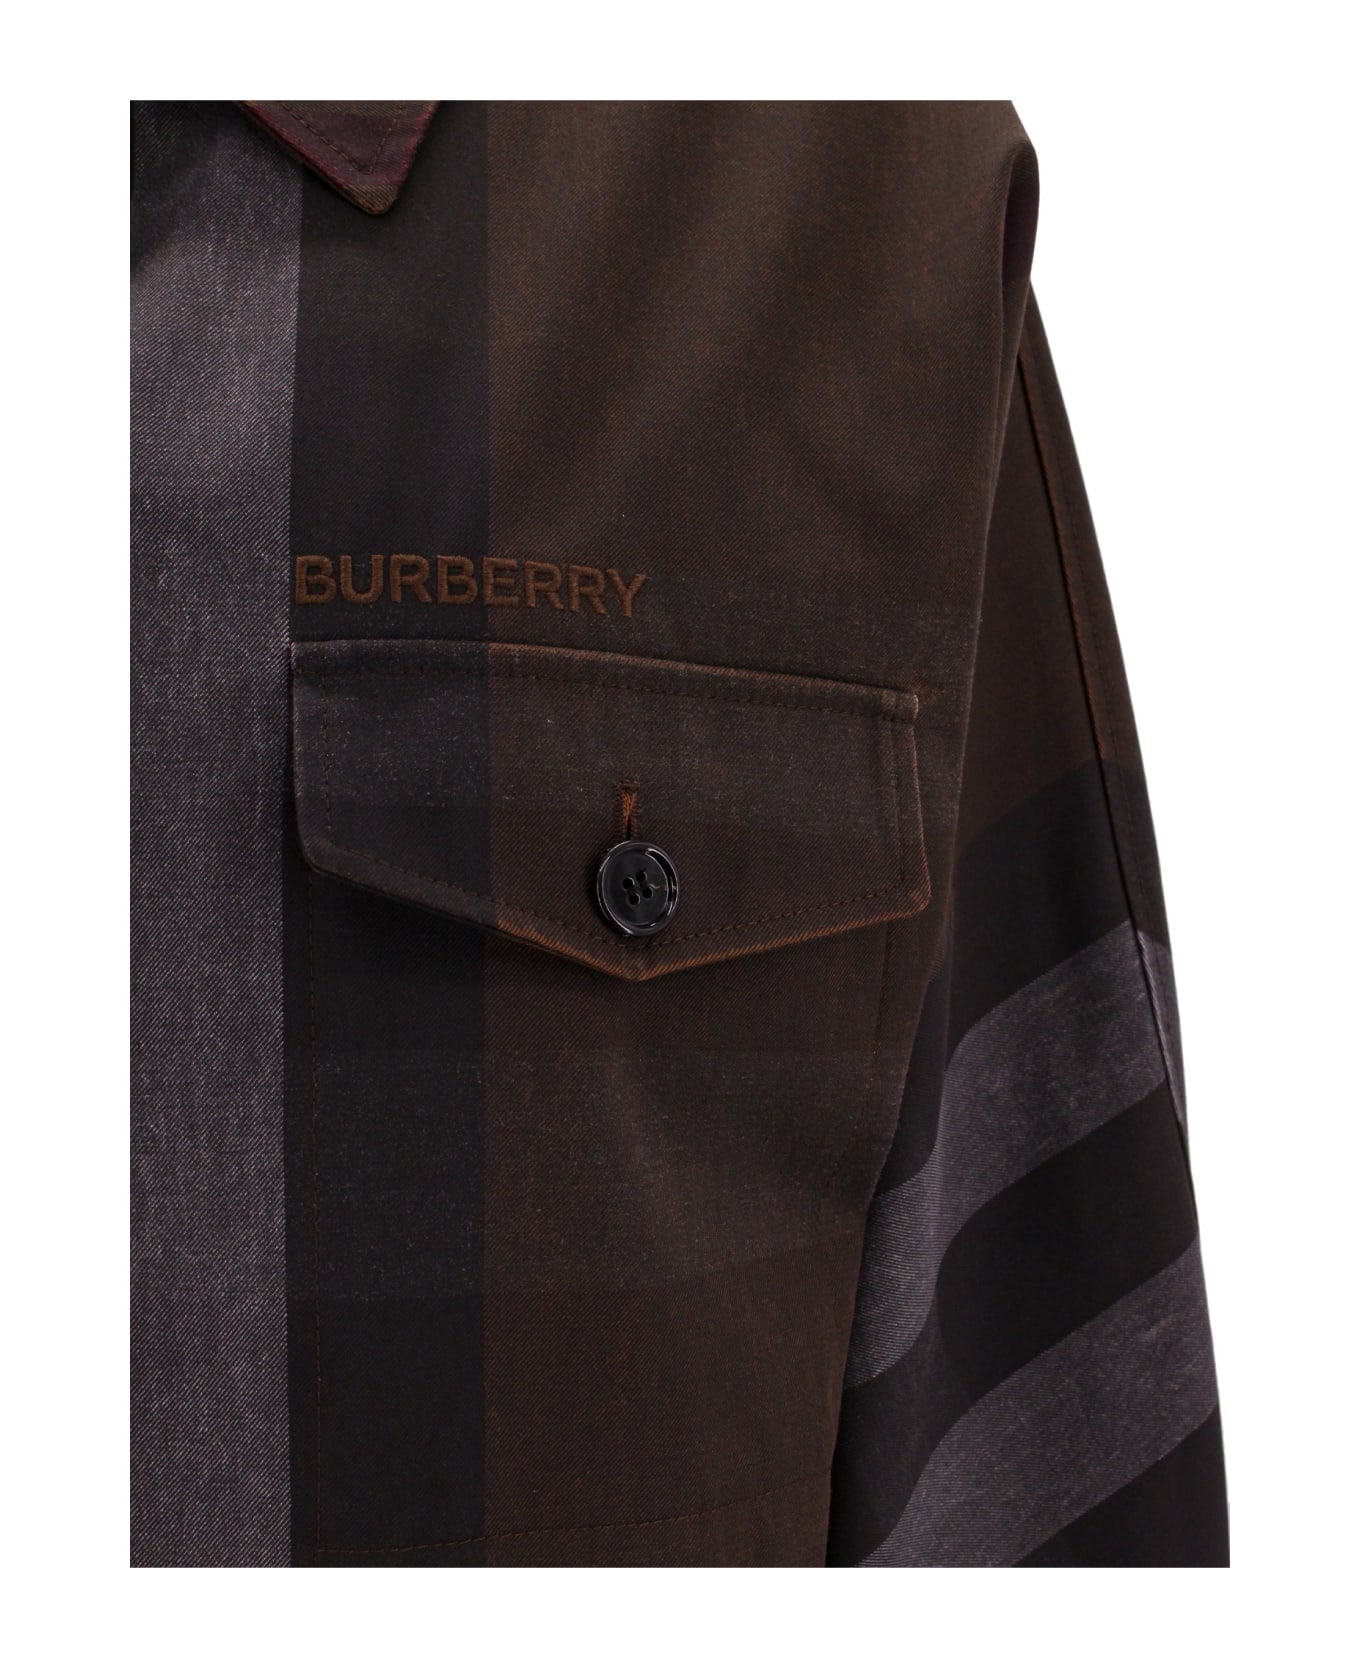 Burberry Jacket - Brown ジャケット